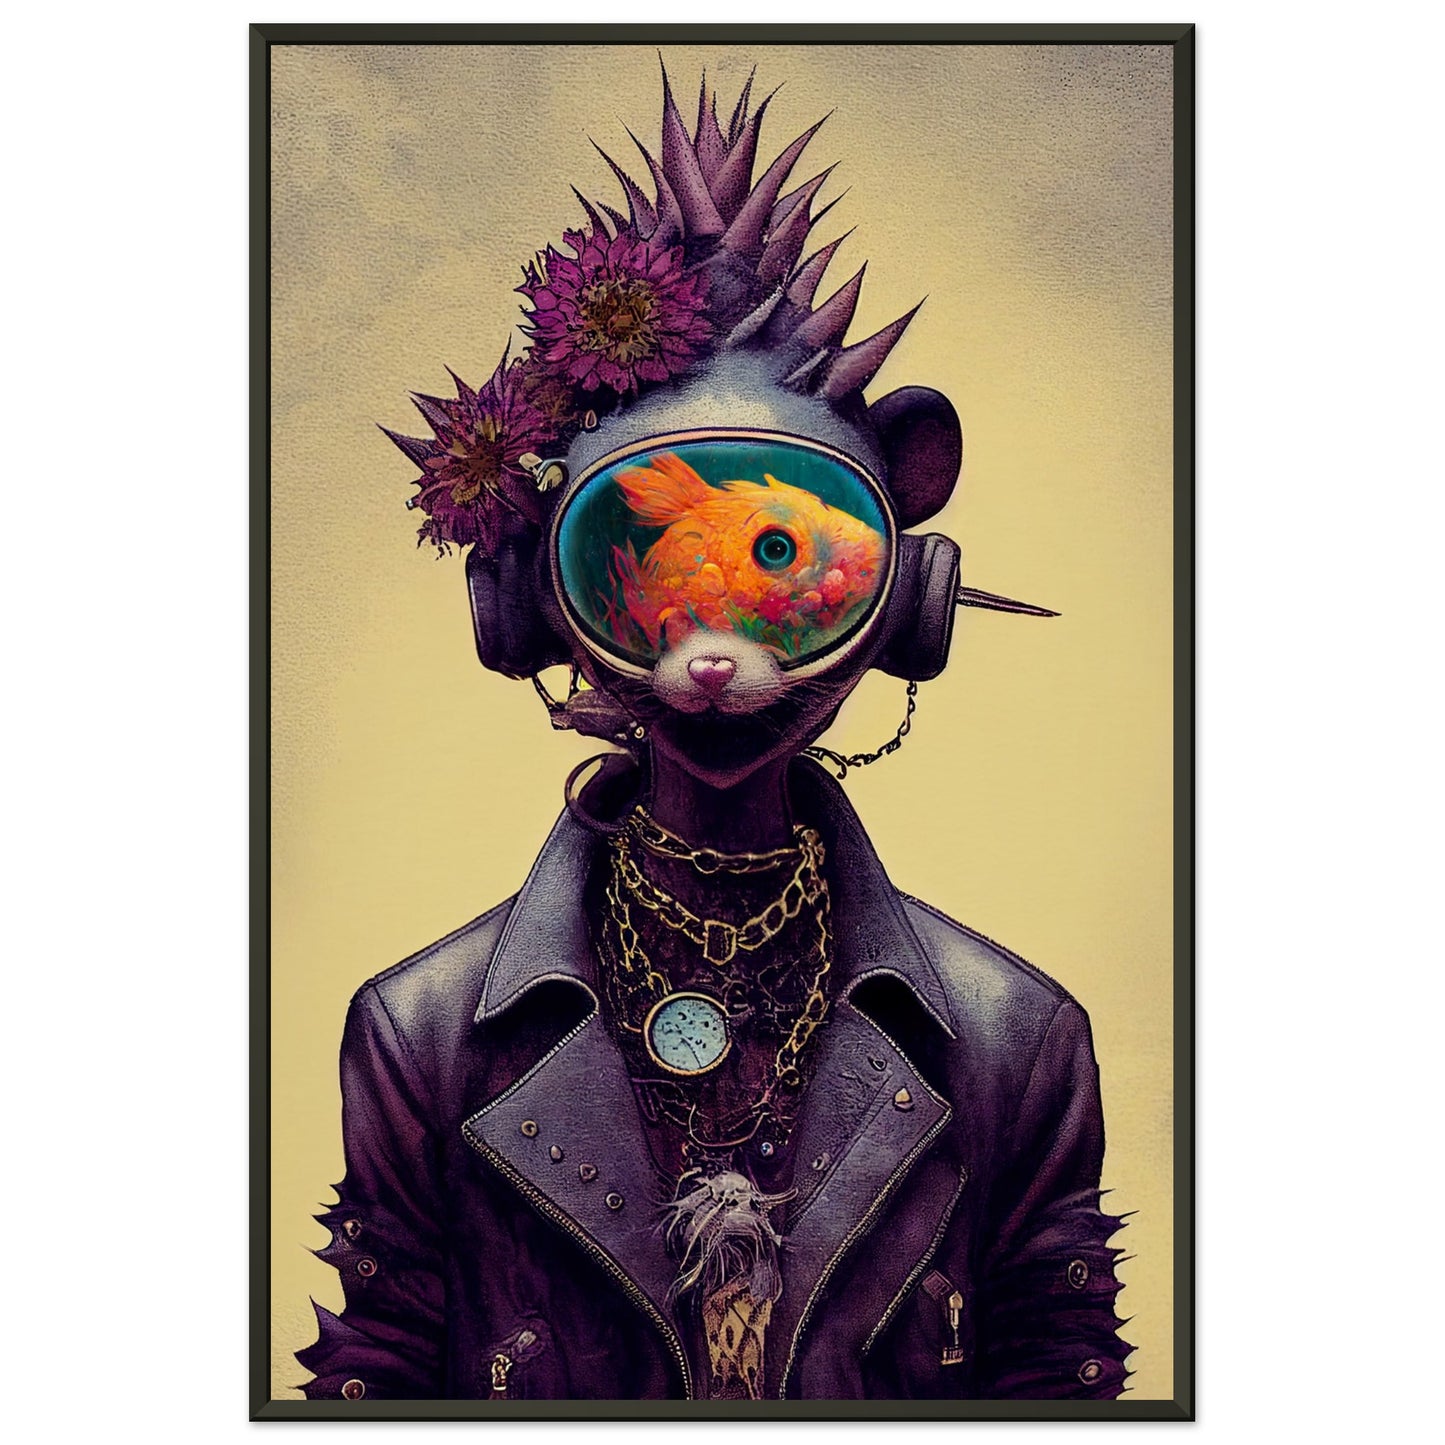 Anthropomorphic flower-punk cat-fish creature